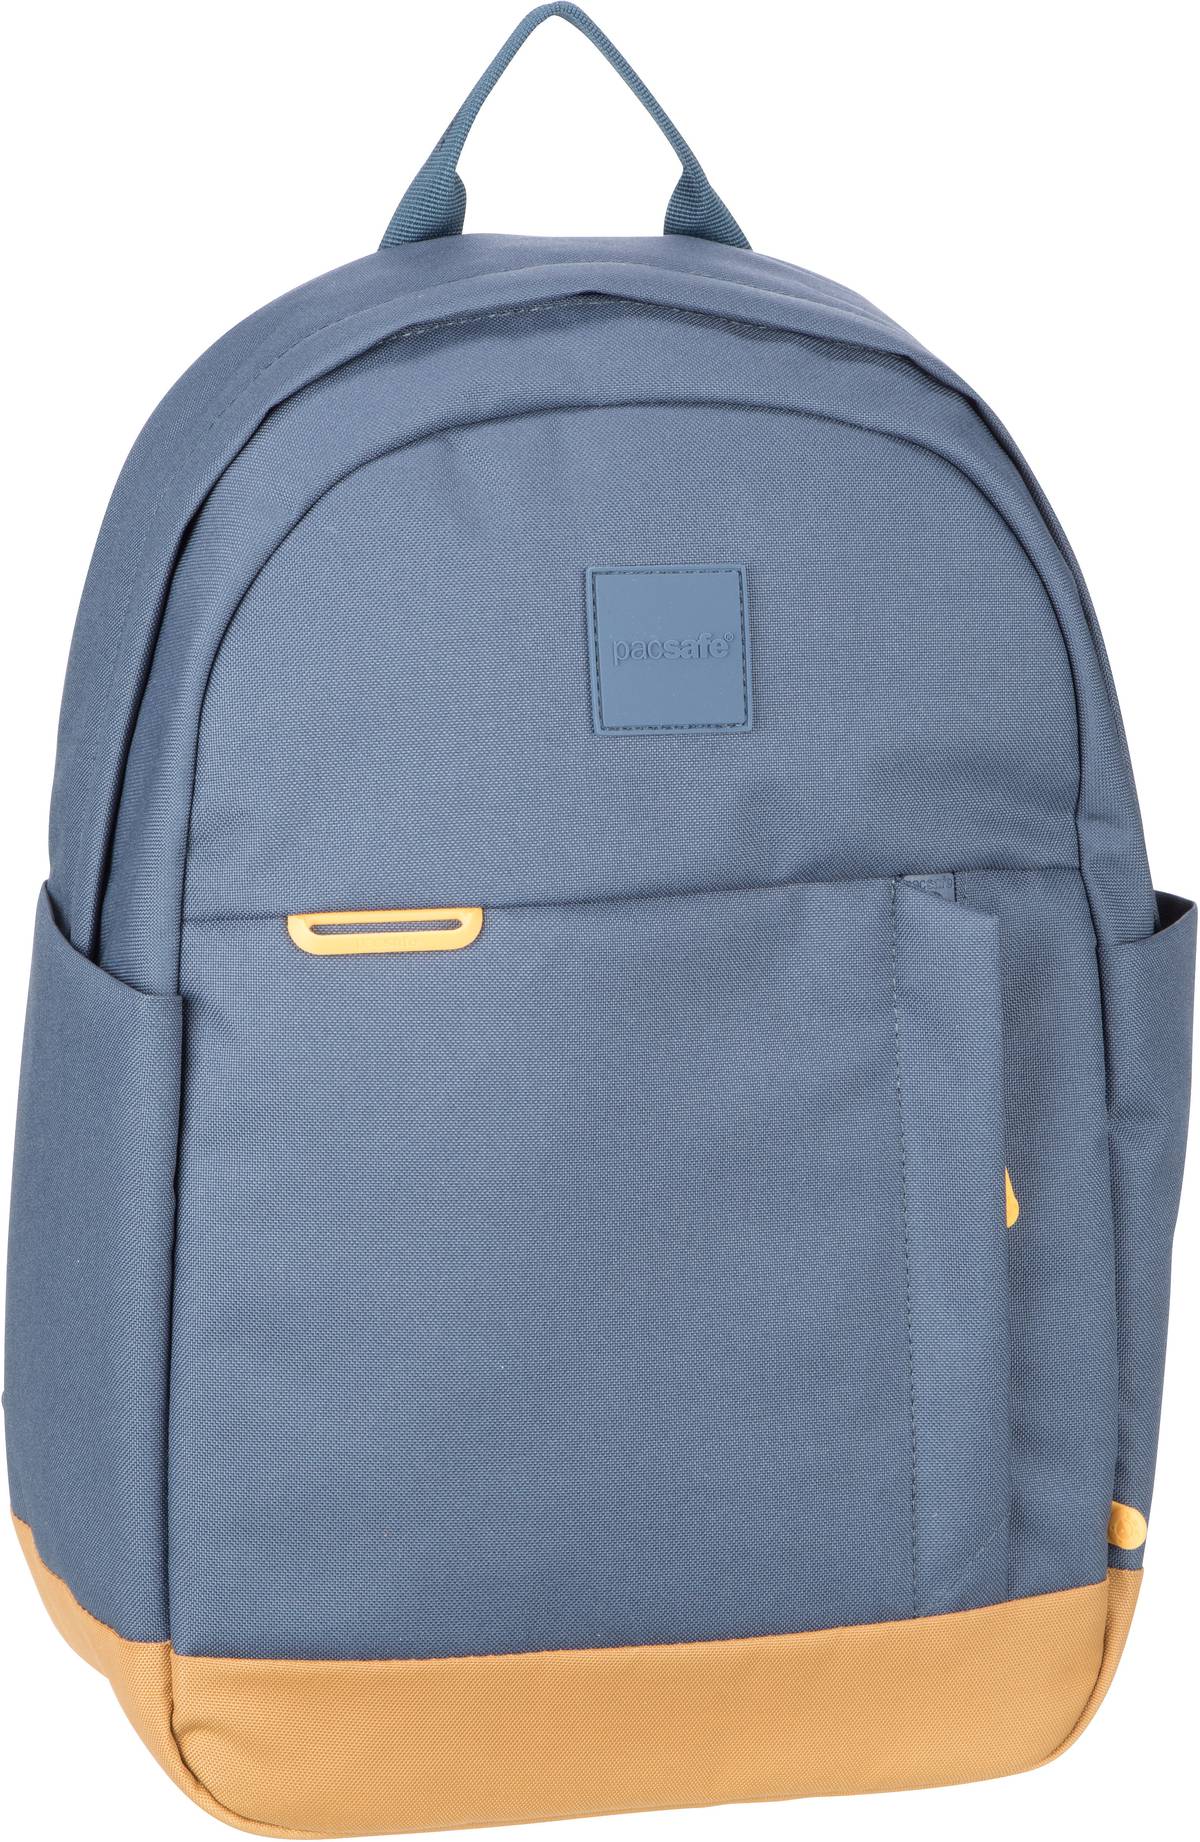 Pacsafe Pacsafe GO 15L Backpack in Blau (15 Liter), Rucksack / Backpack